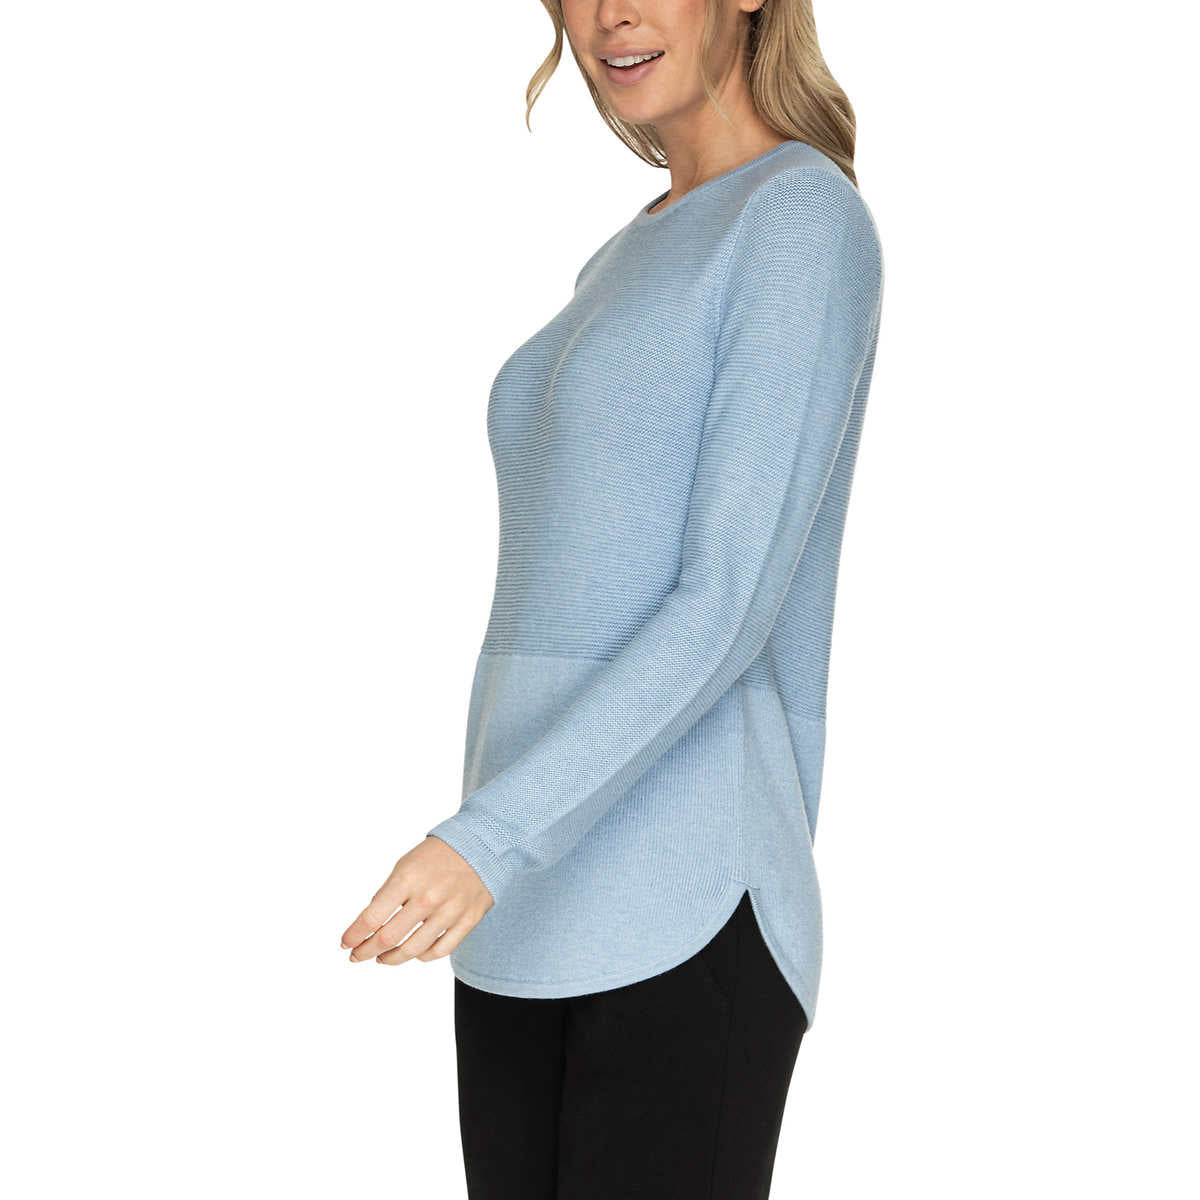 Advent Women's Lightweight Cotton Blend Textured Knit Tunic Sweater